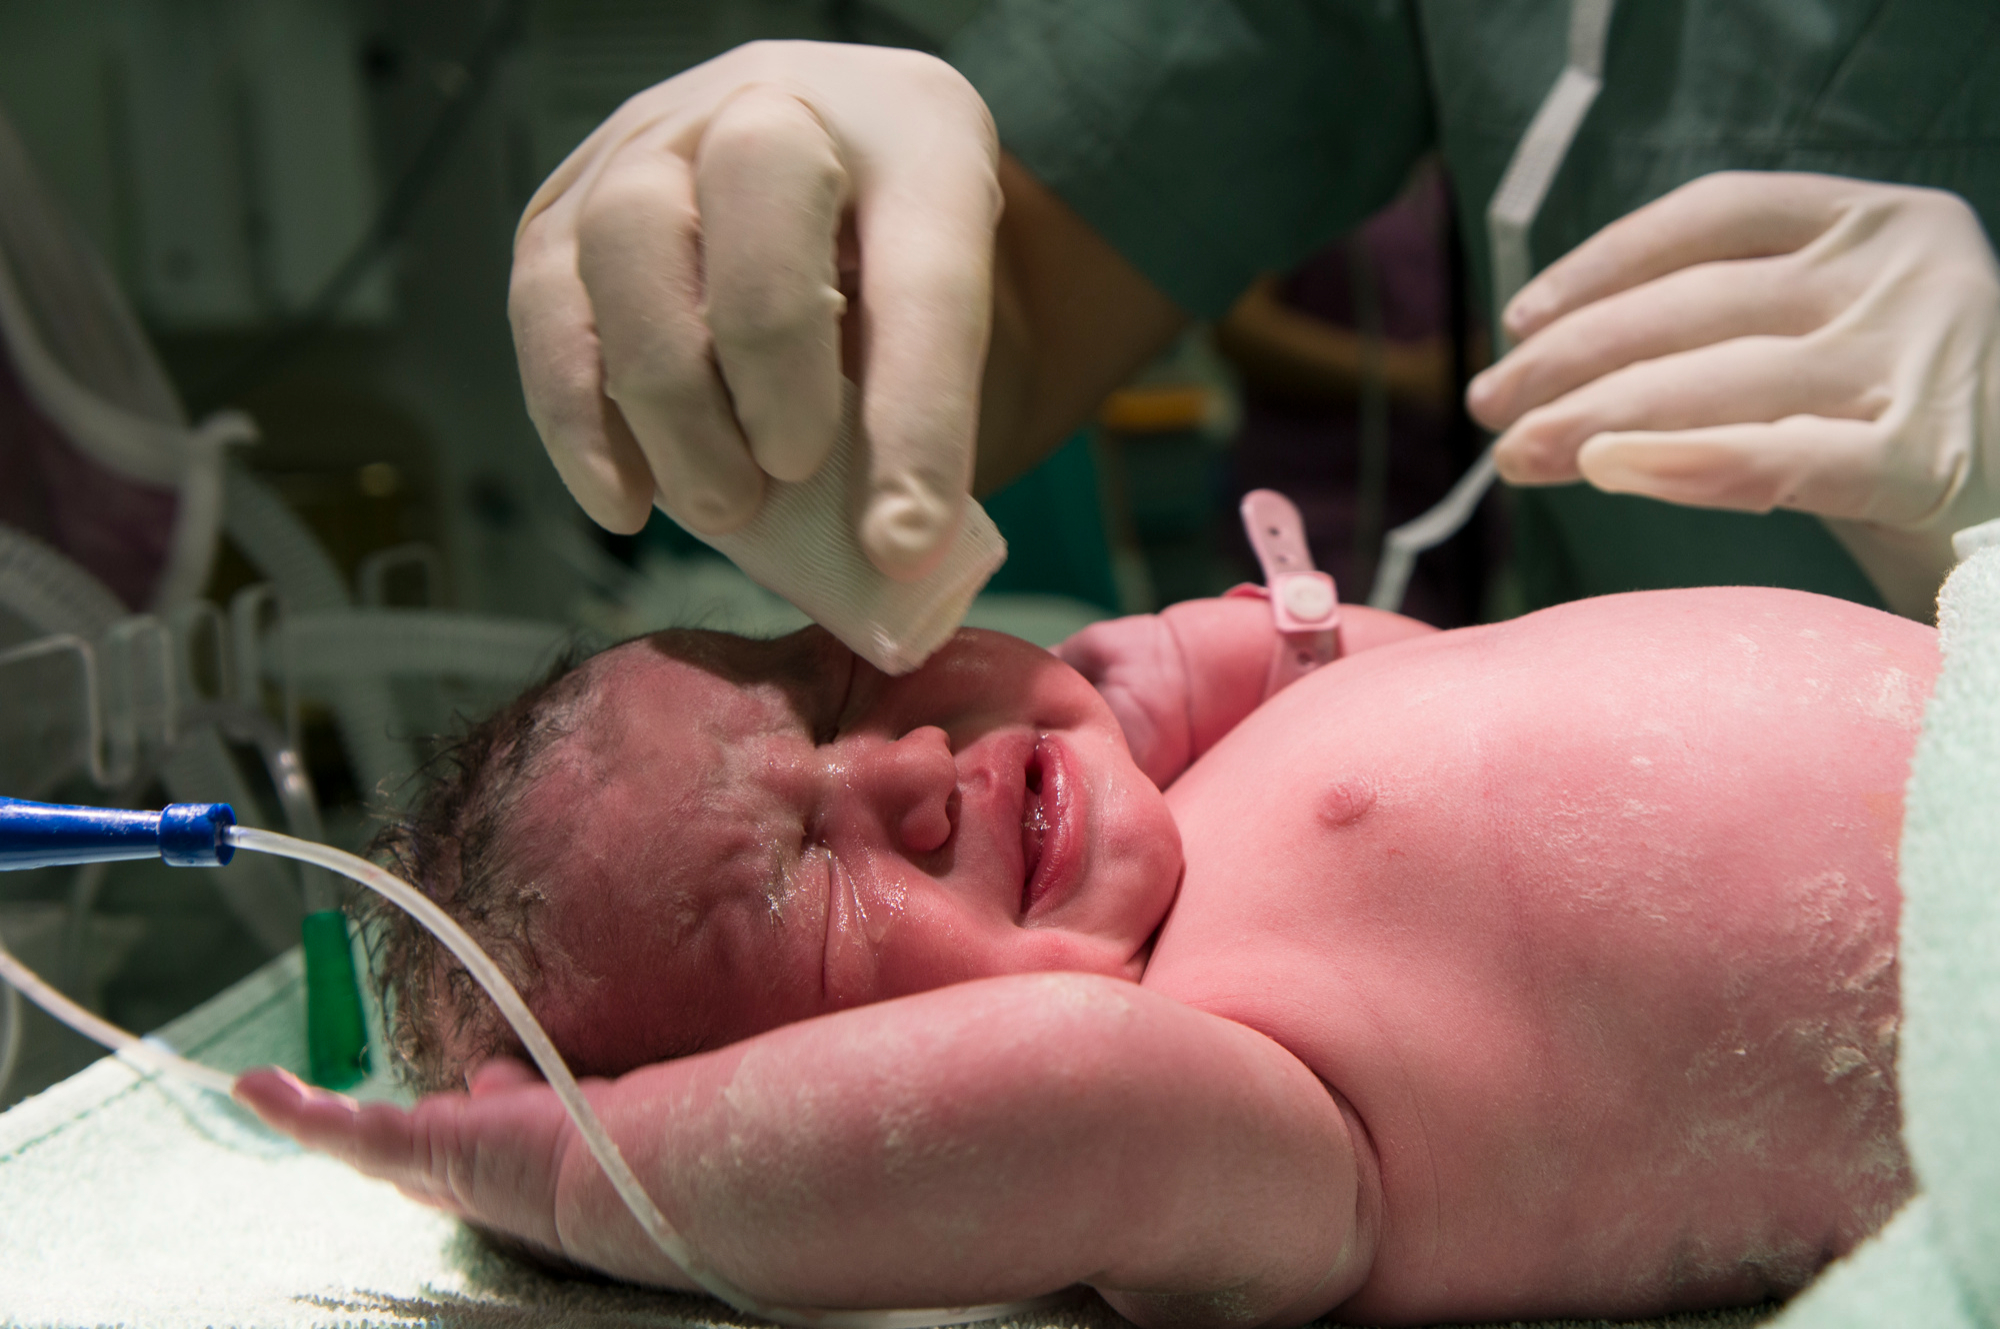 Entenda sobre a icterícia neonatal e seu tratamento adequado